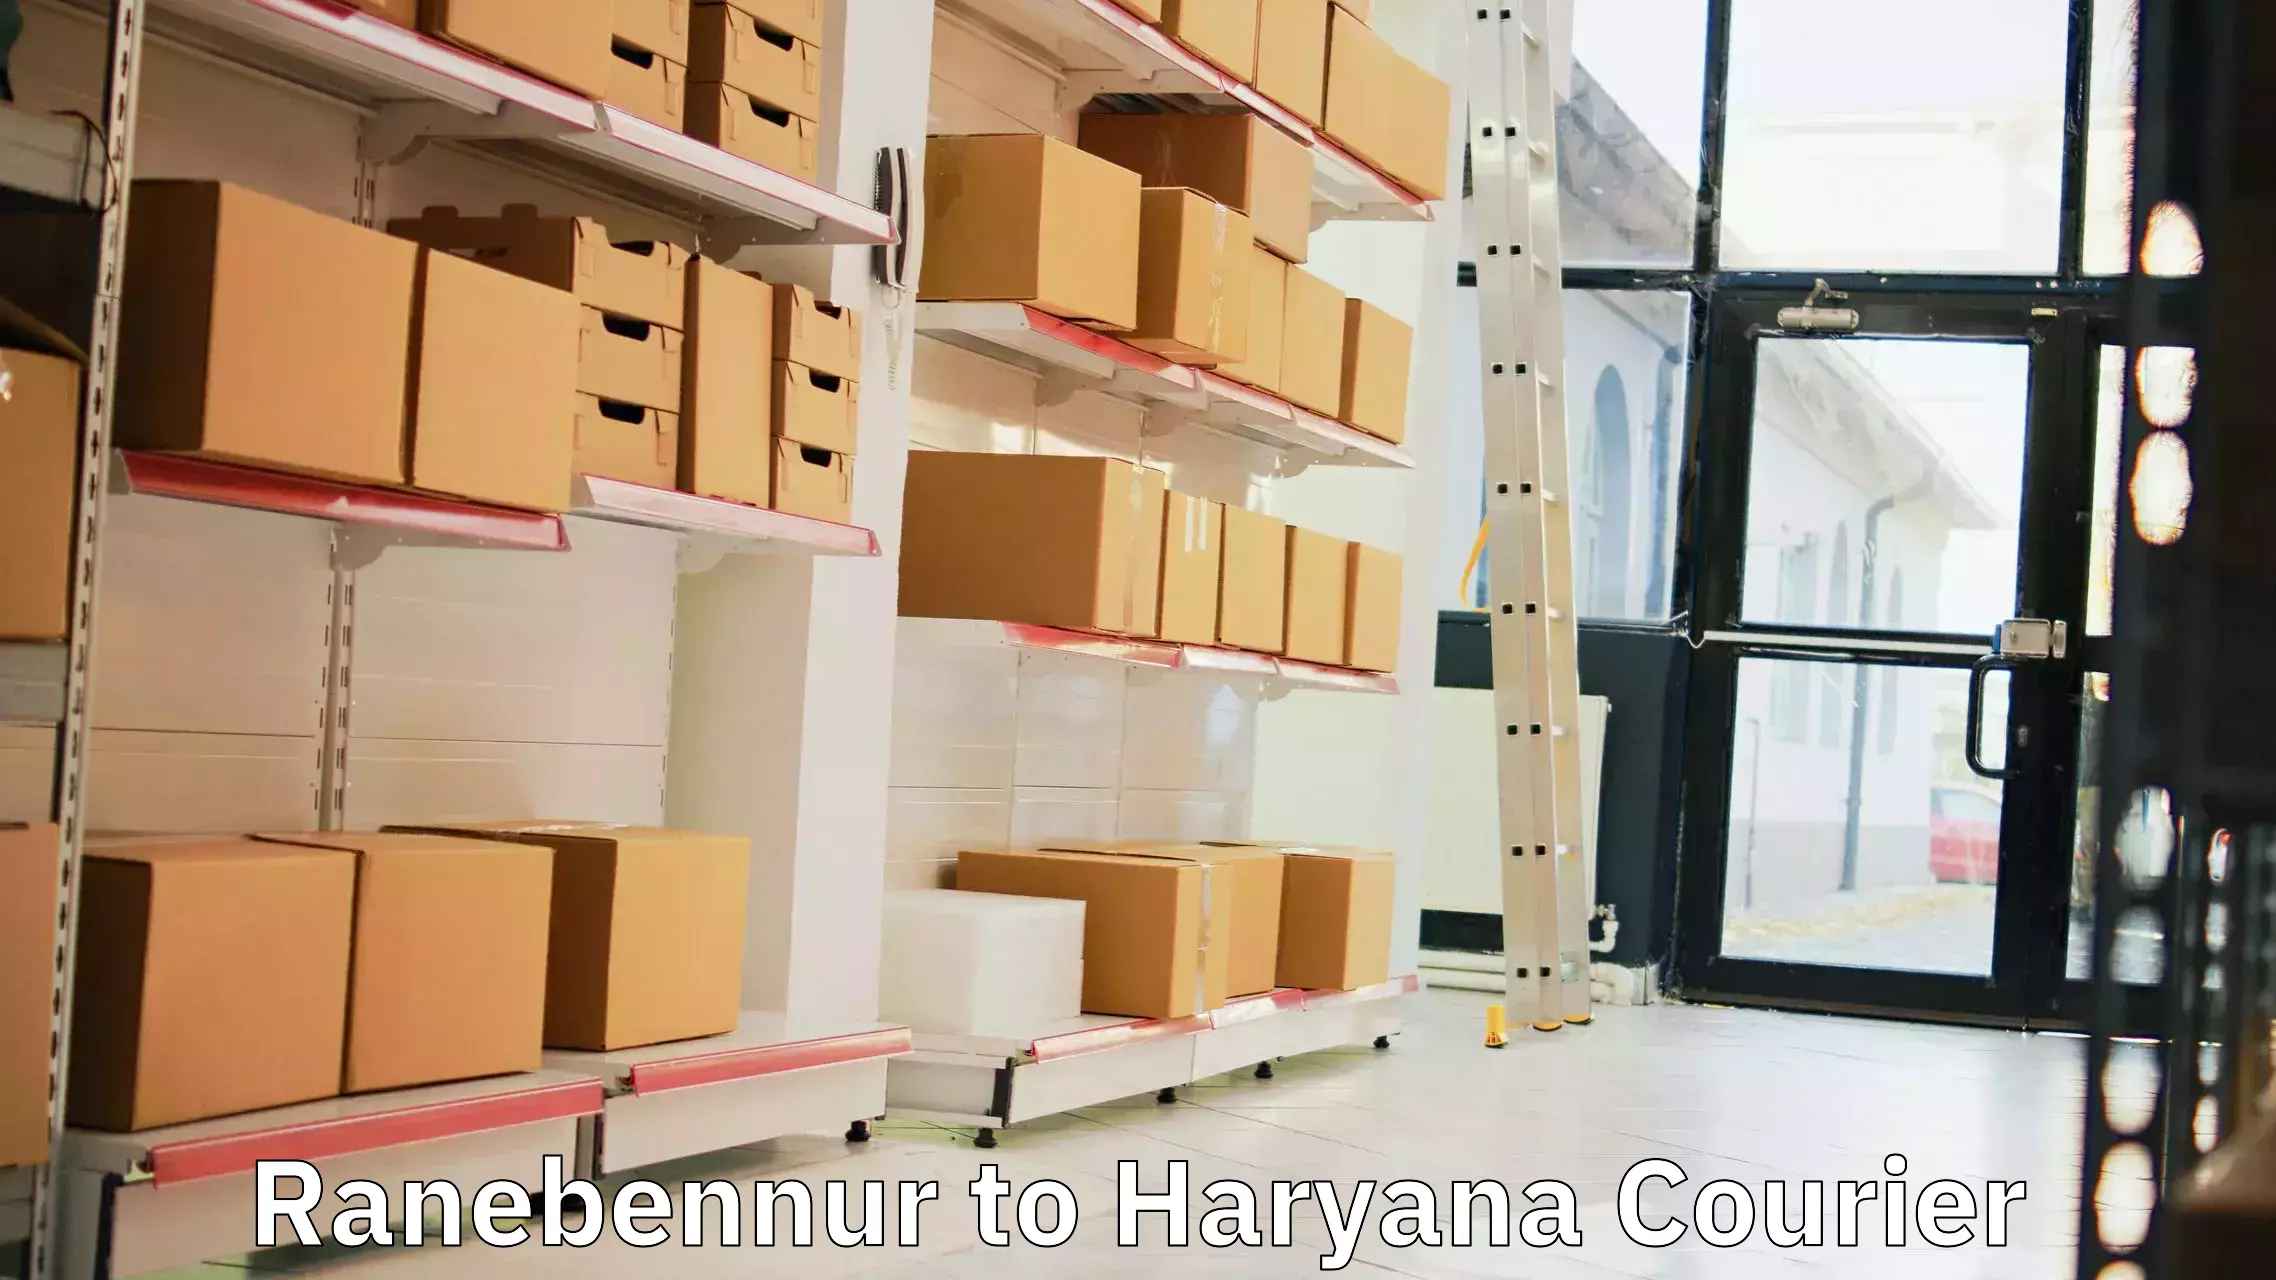 Customer-centric shipping Ranebennur to Haryana